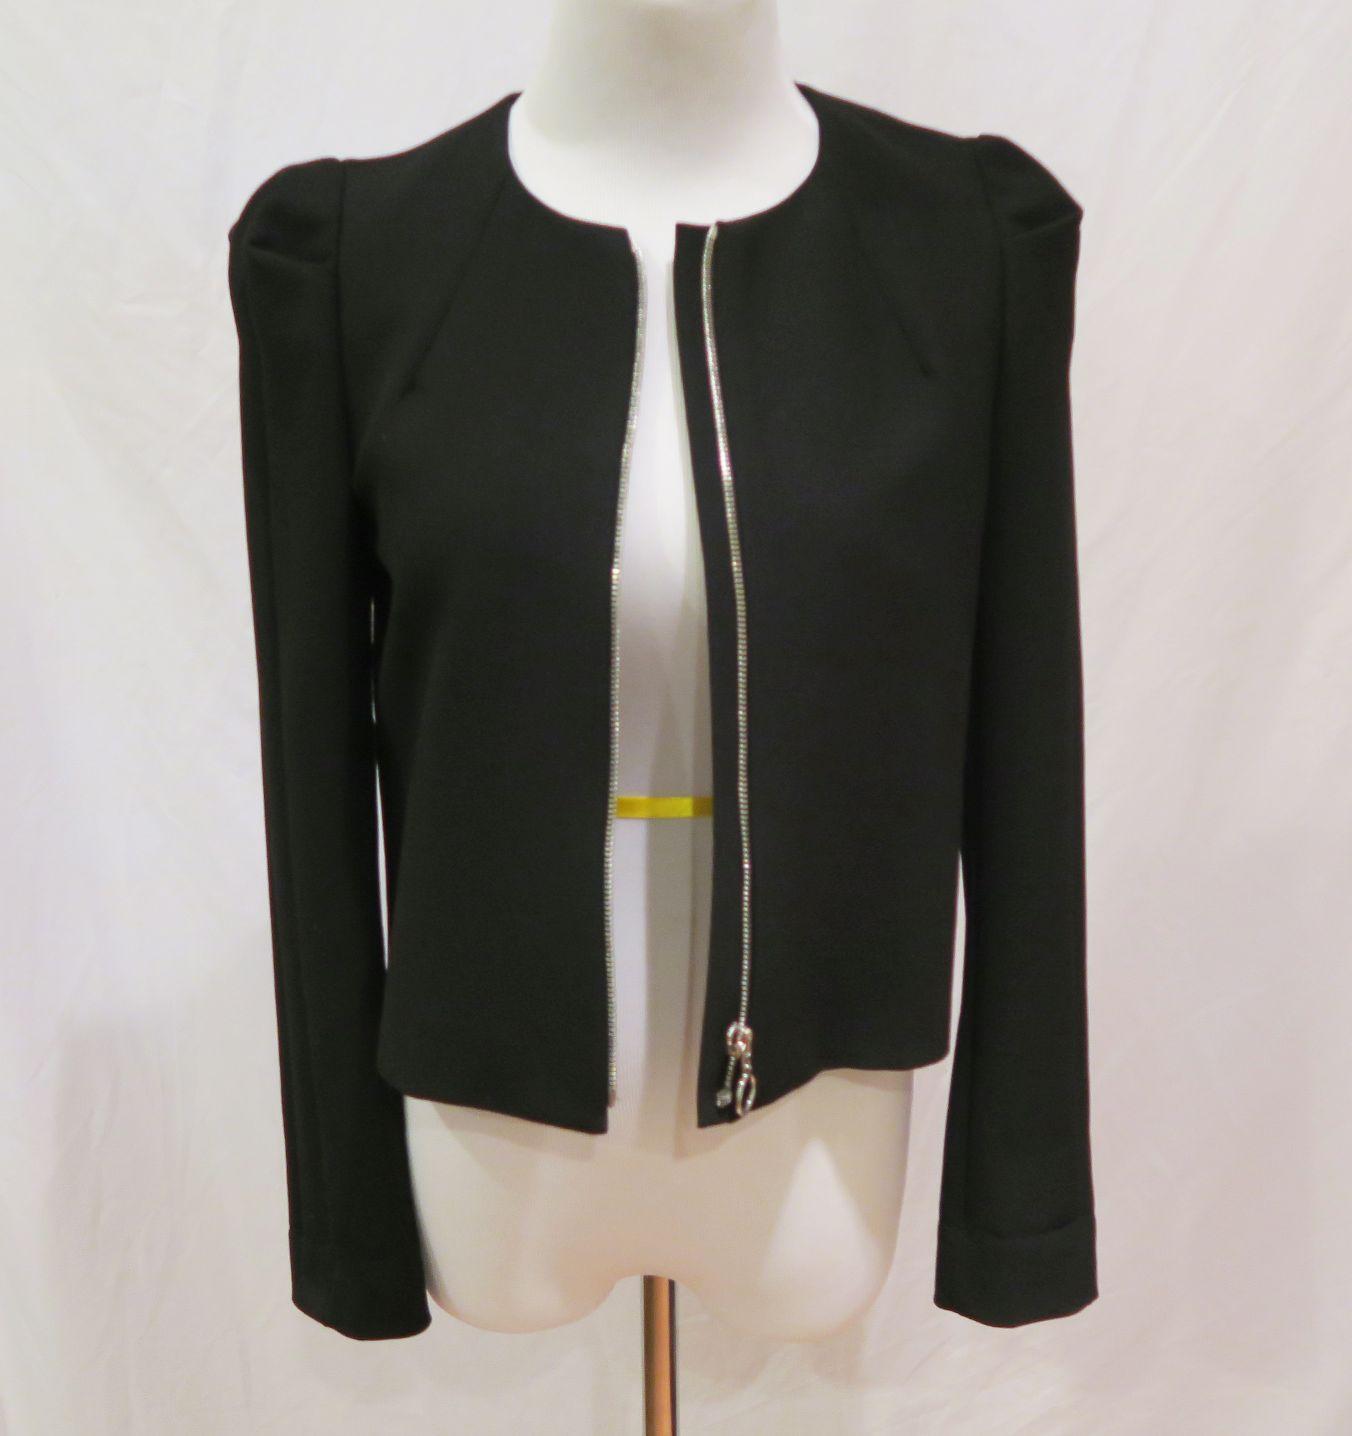 Zara Black Zip Jacket, size S, worn